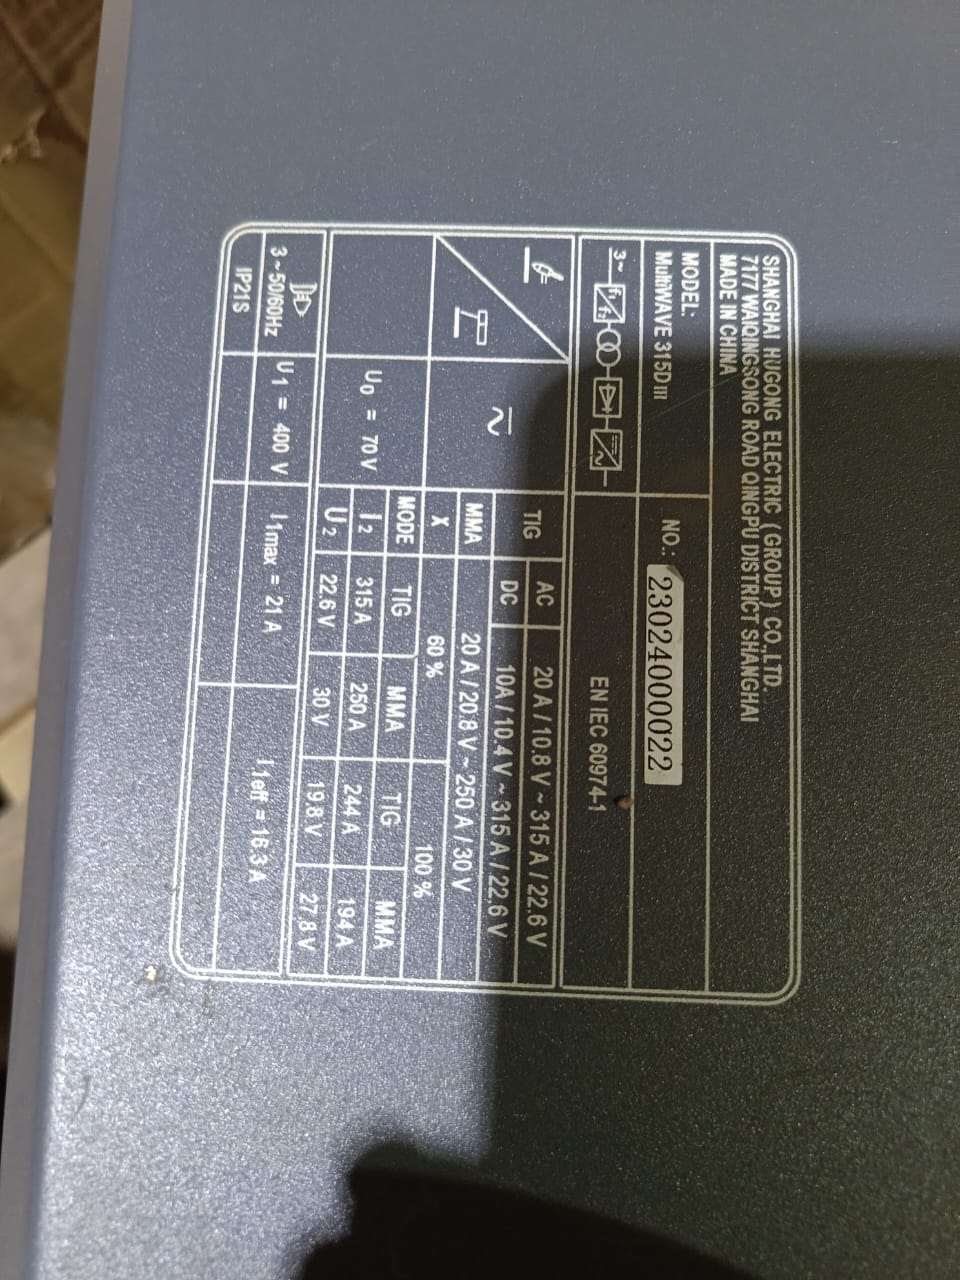 Аппарат аргонодуговой сварки HUGONG MultiWAVE 315D III AC/DC (cold tac, различные типы волны) (без БО, тележки и горелки) уценка